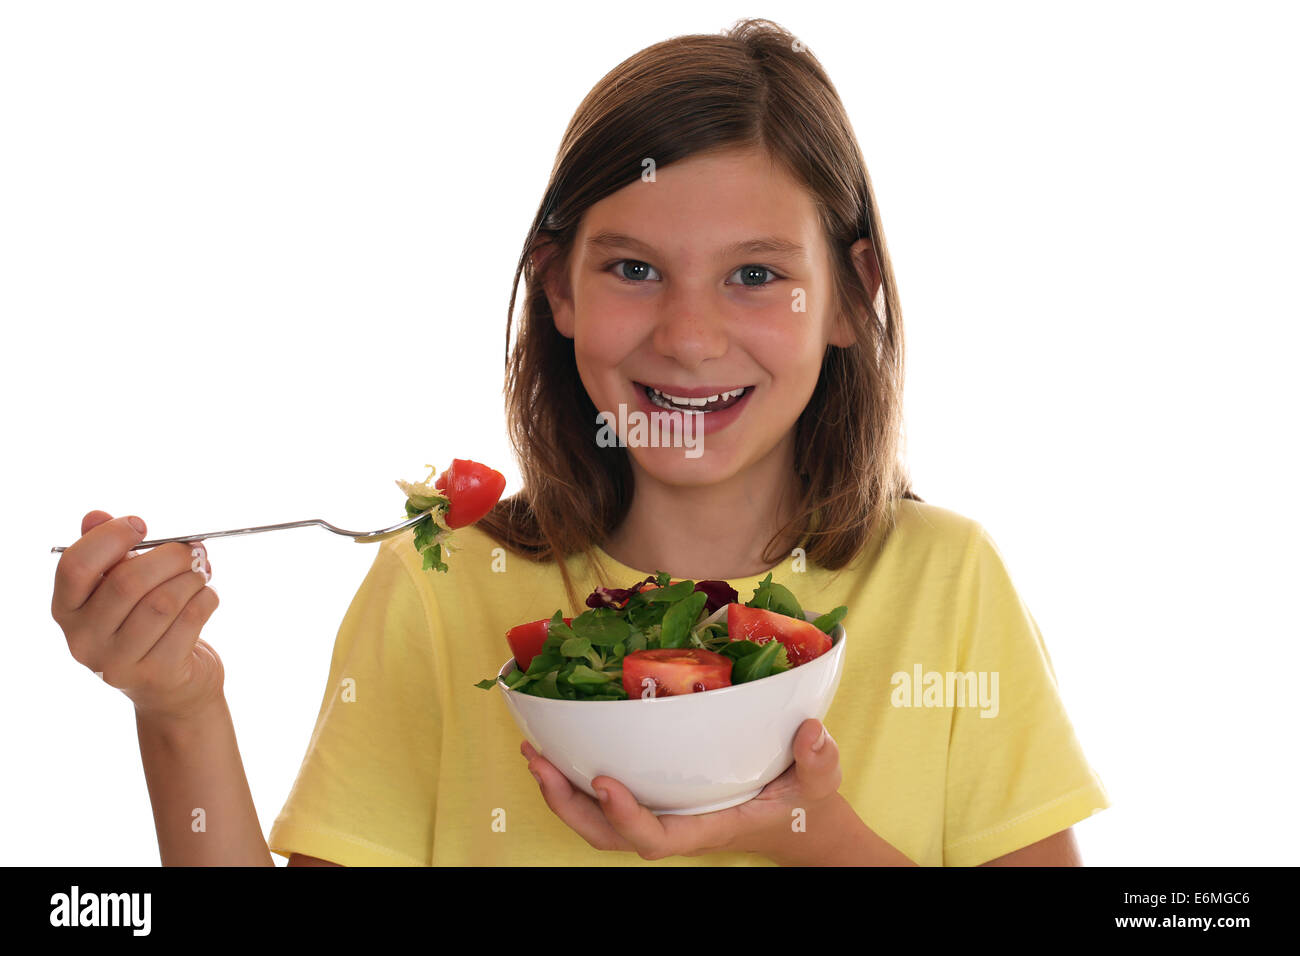 Gesunde Ernährung lächelndes Mädchen mit frischem Salat, isoliert auf weißem Hintergrund Stockfoto